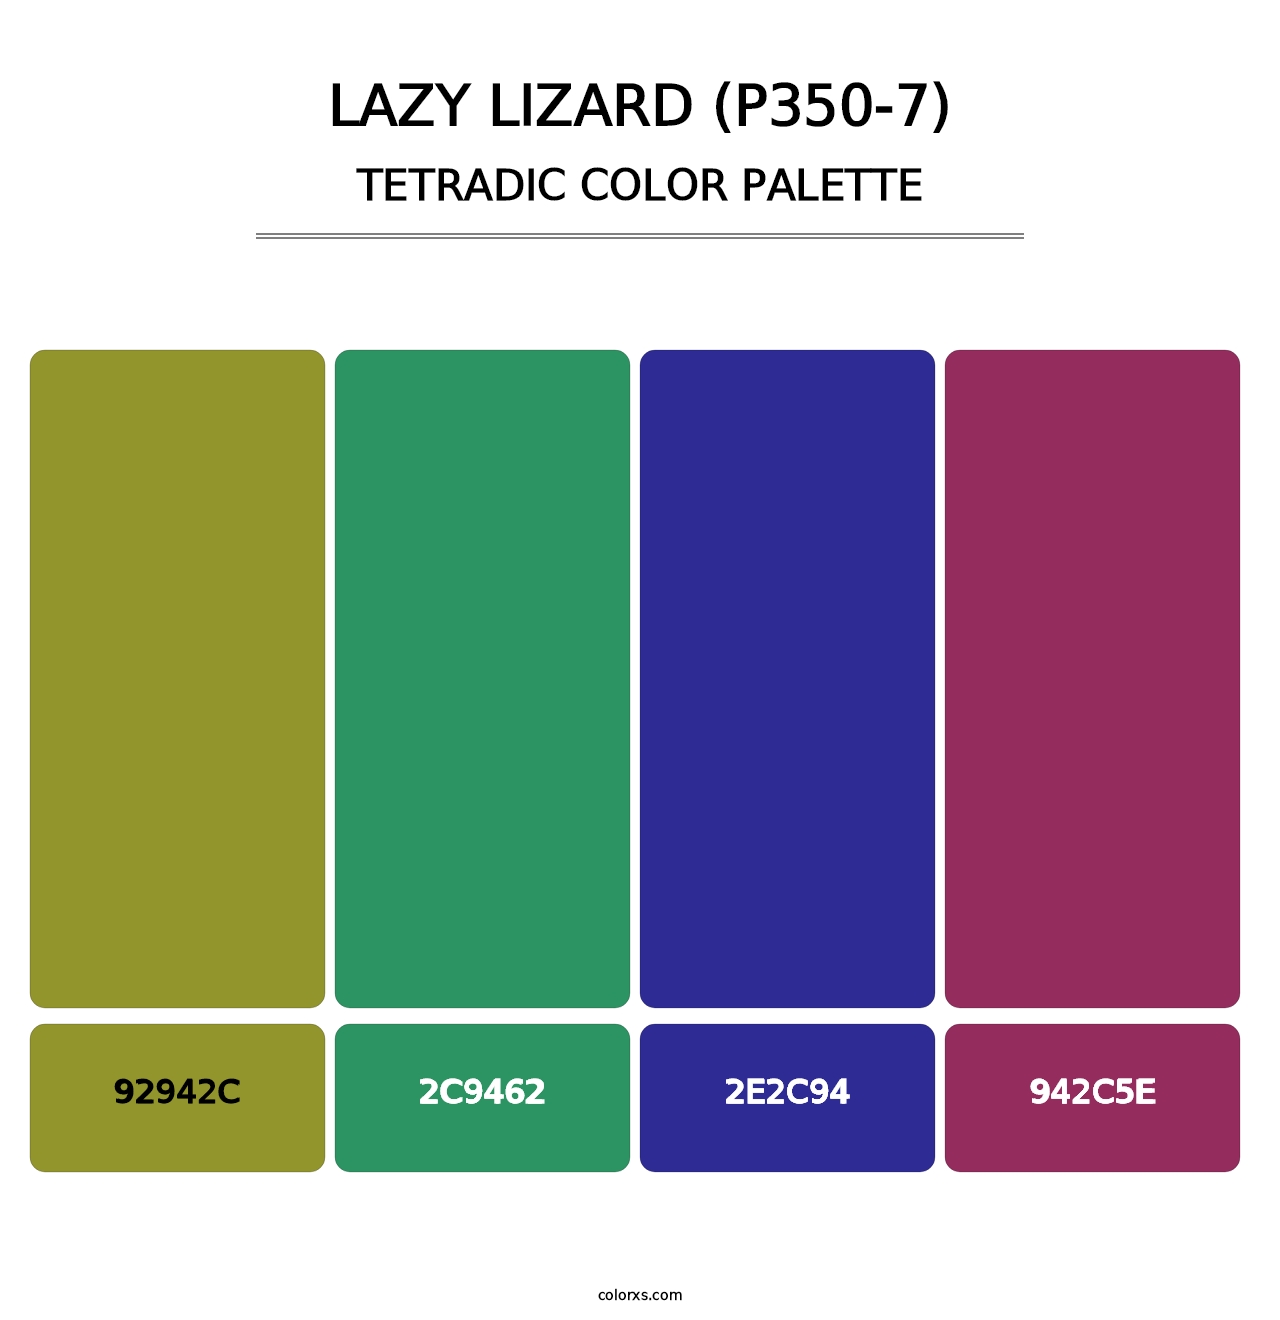 Lazy Lizard (P350-7) - Tetradic Color Palette